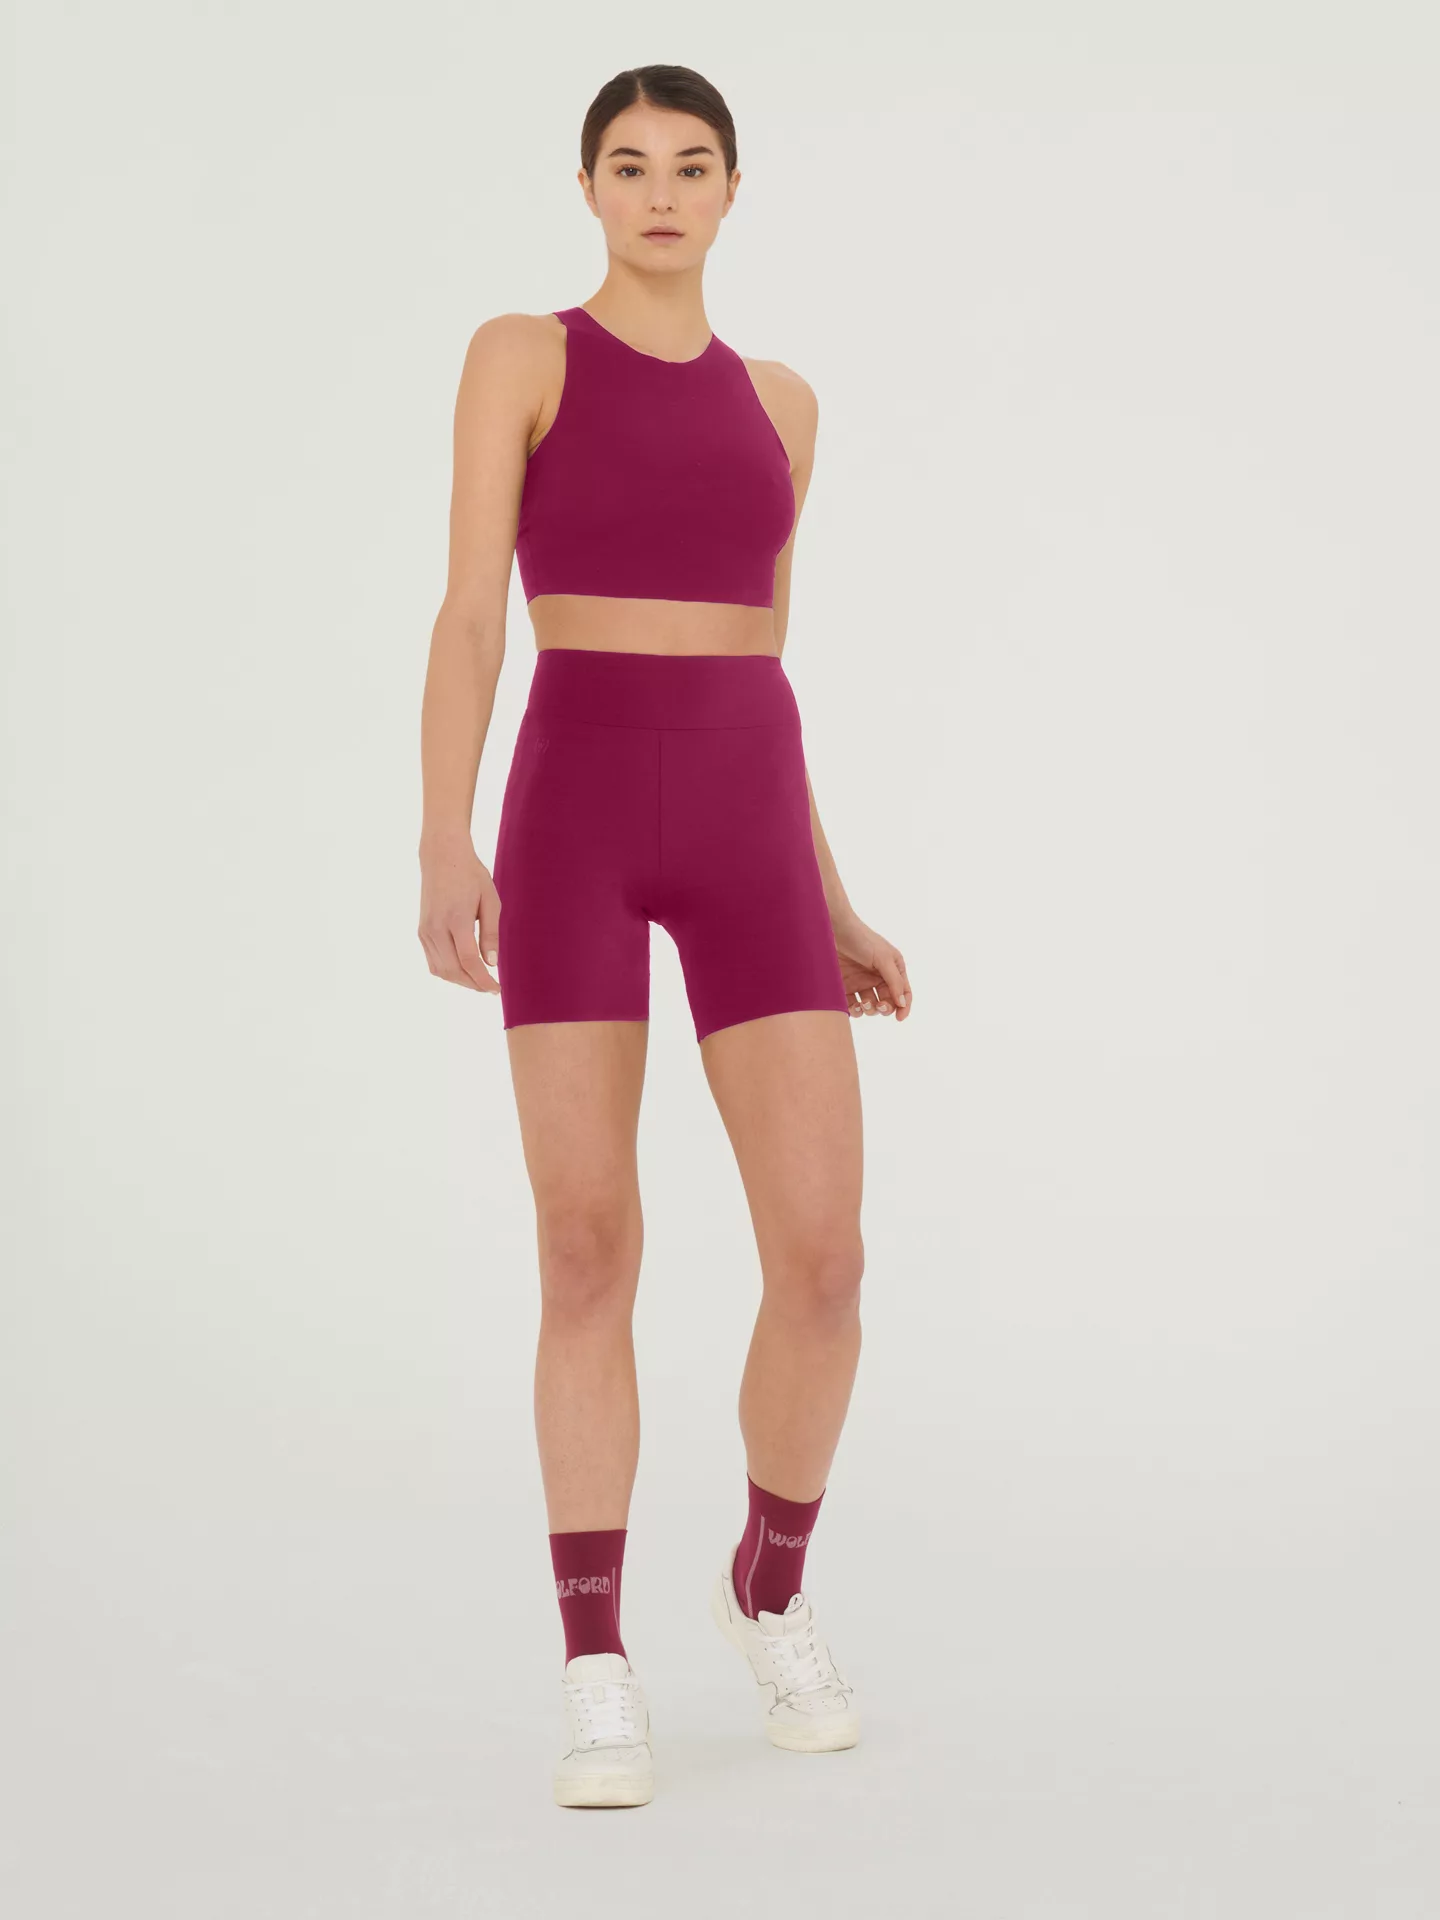 Wolford - The Workout Shorts, Frau, mineral red, Größe: S günstig online kaufen